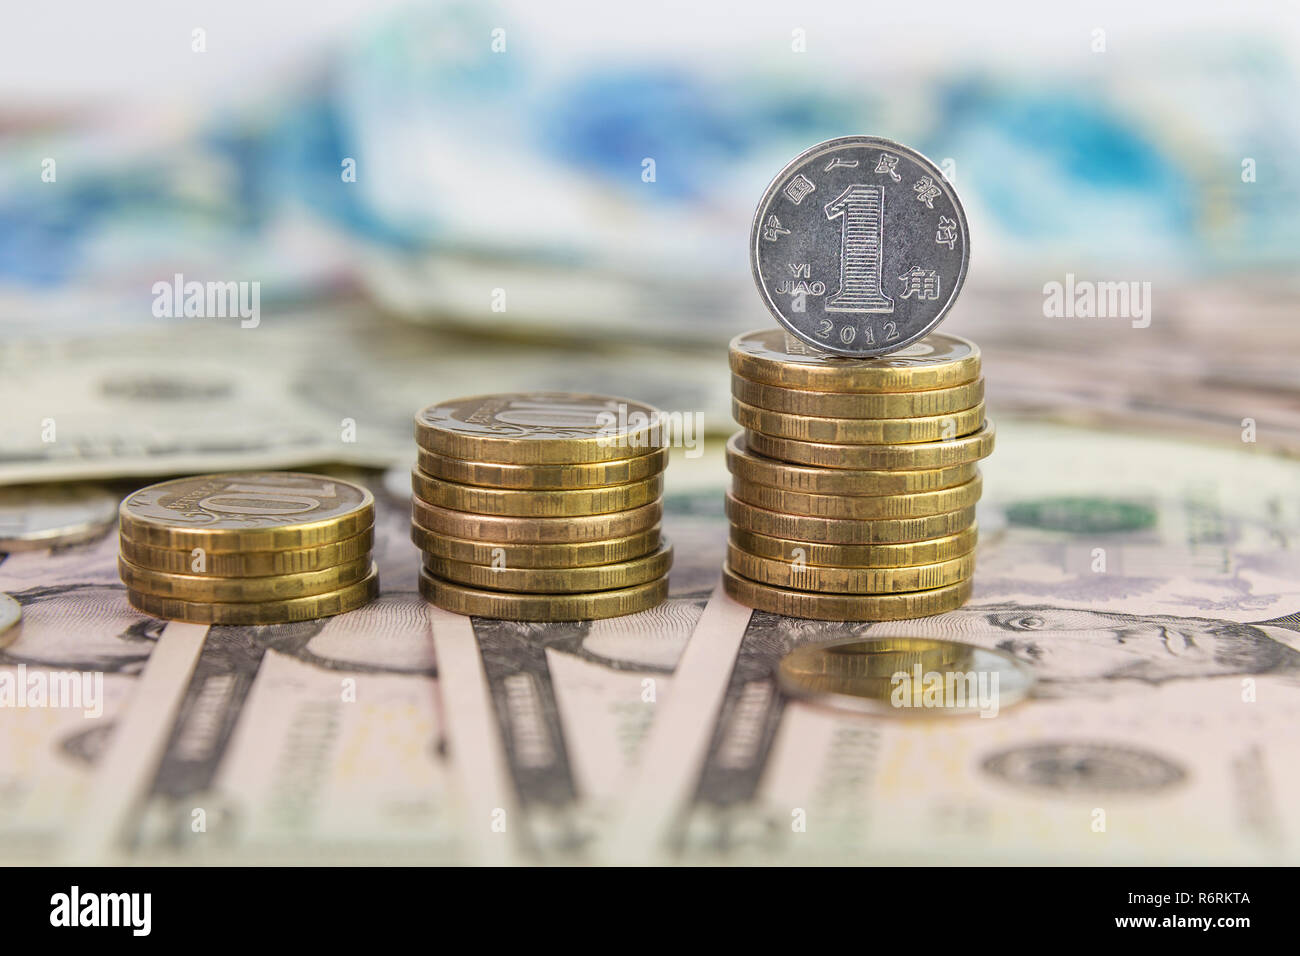 Un yuan coin debout sur une pile de pièces de 10 roubles Banque D'Images